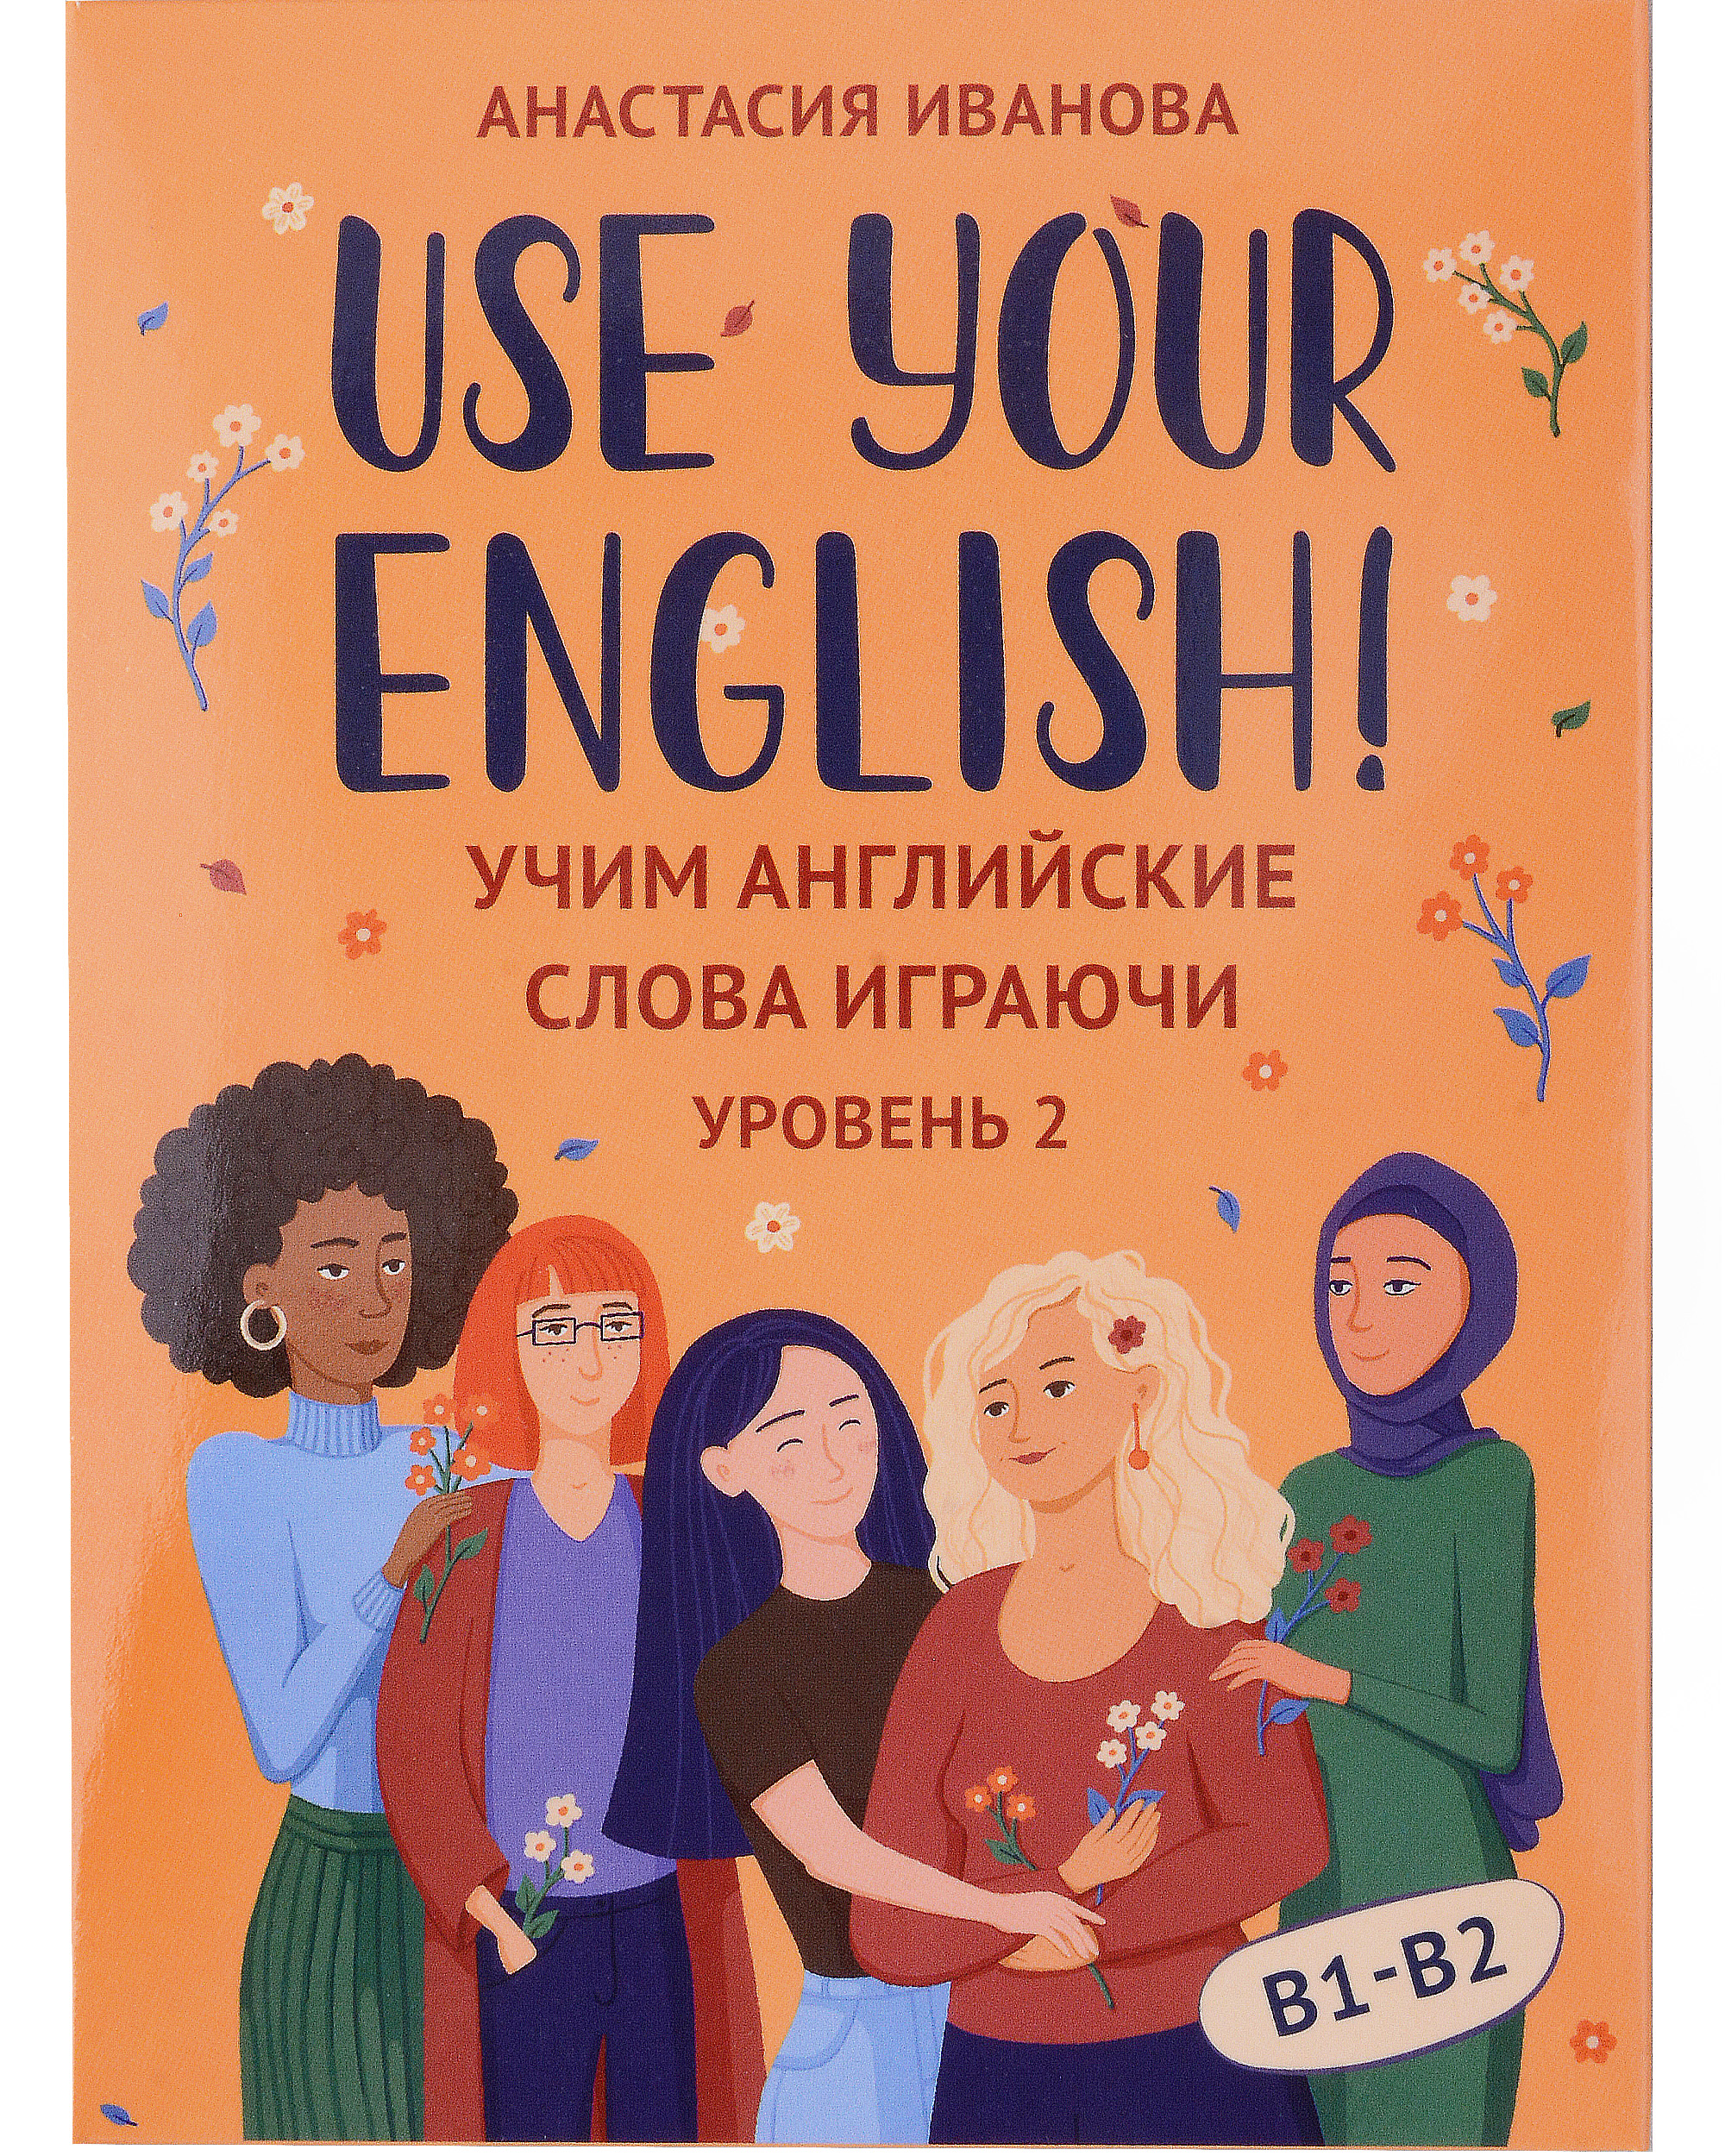 Иванова Анастасия Евгеньевна Use your English! Учим английские слова играючи. Уровень 2